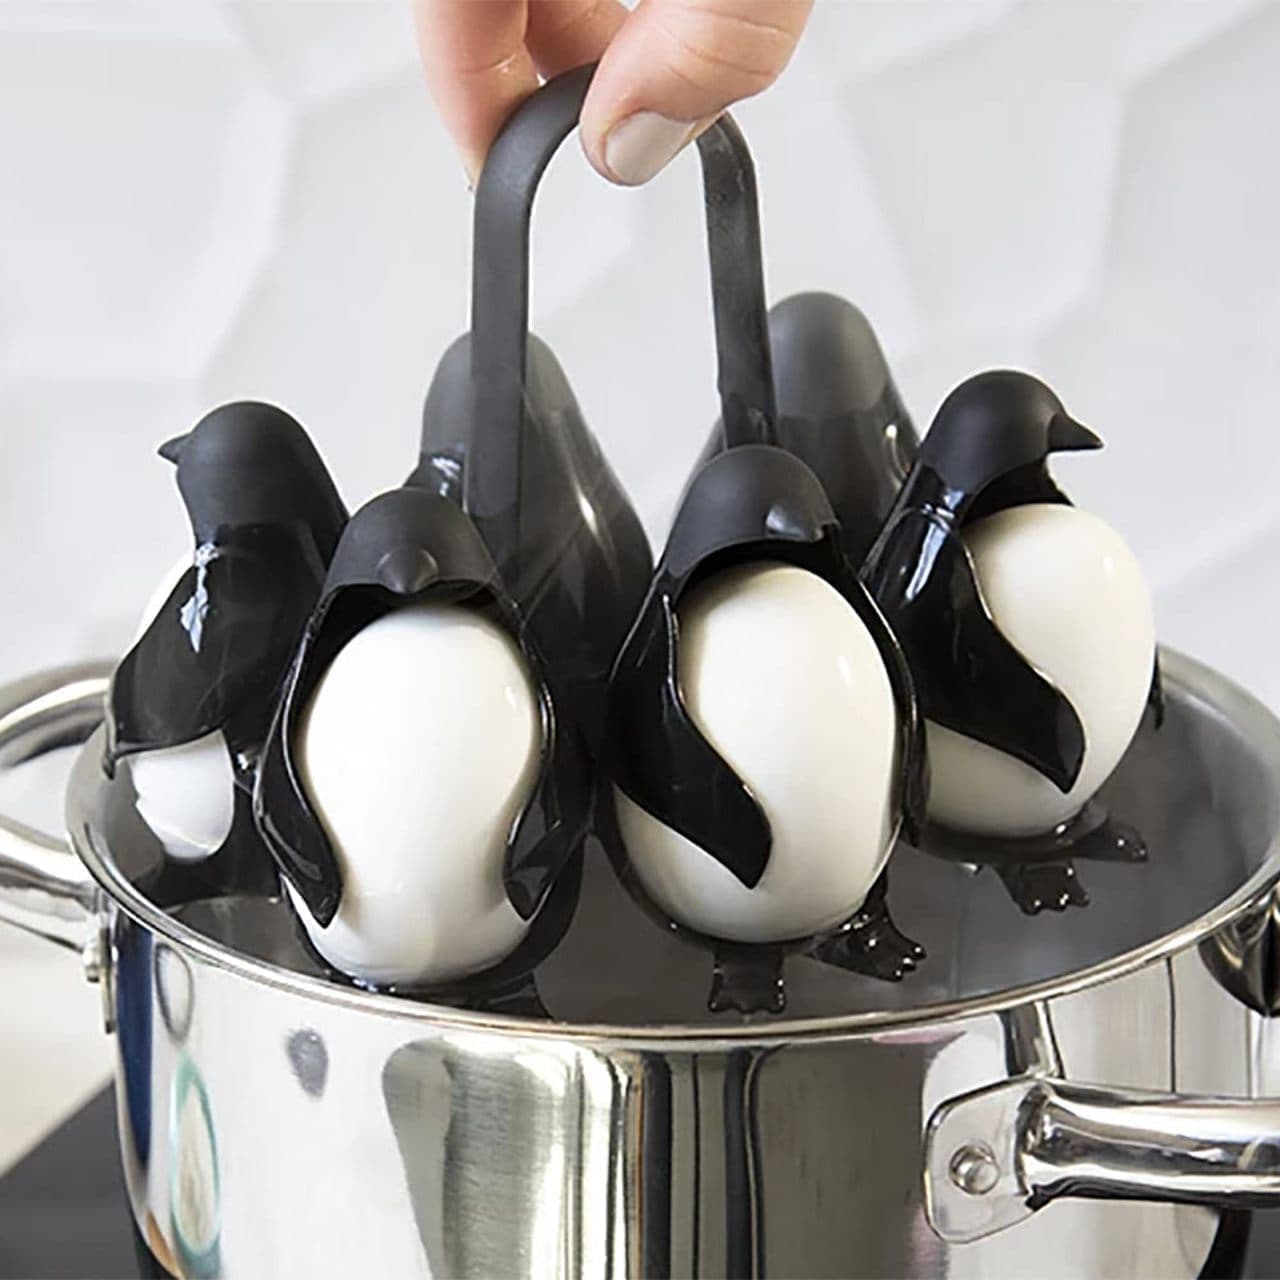 ペンギン型のエッグホルダー「Egguins」